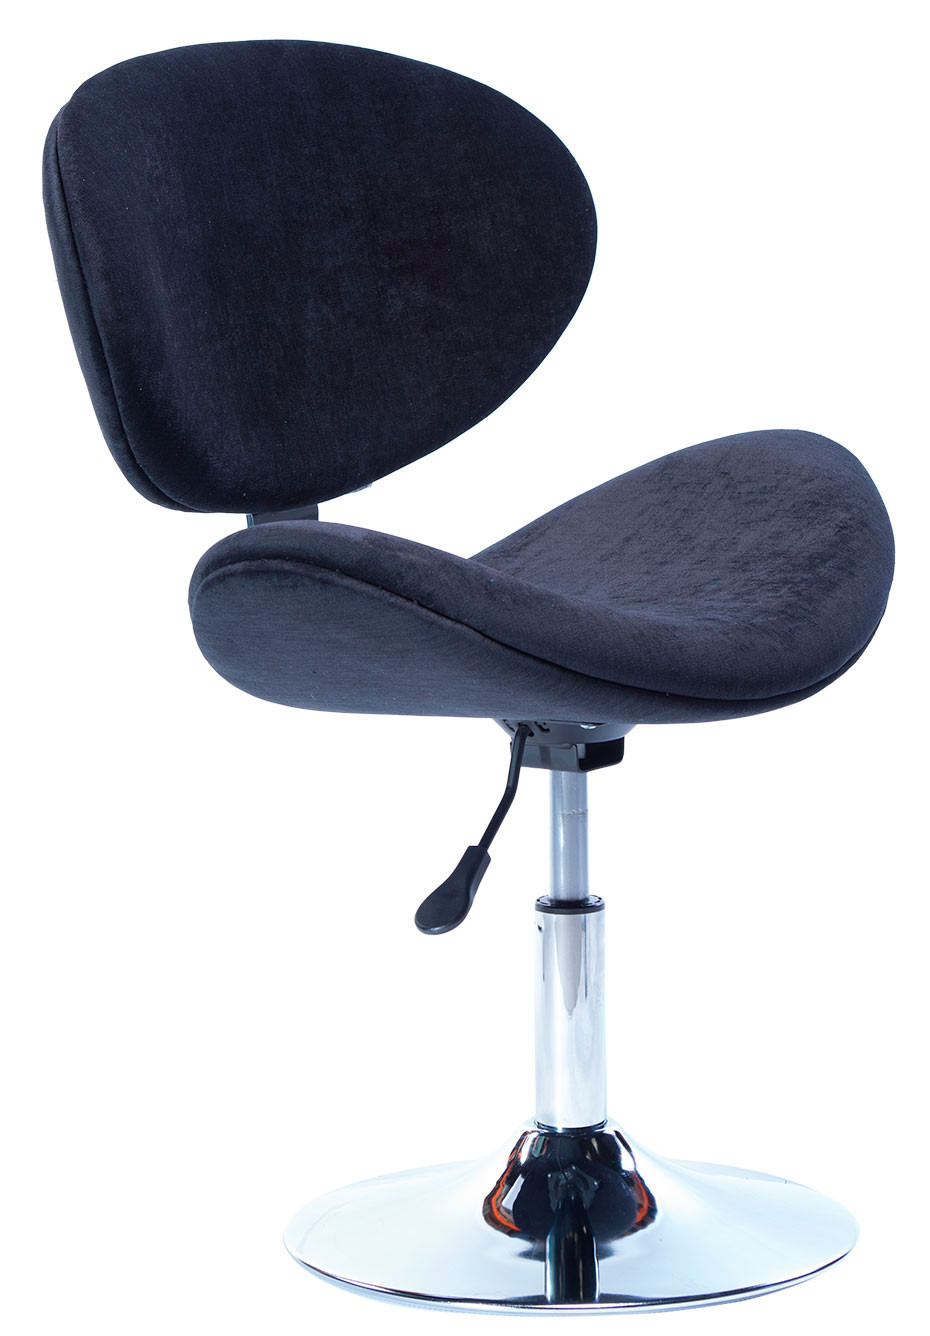 Cadeira Decorativa Base Disco Cromada e Regulagem de Altura BL171 - Preta